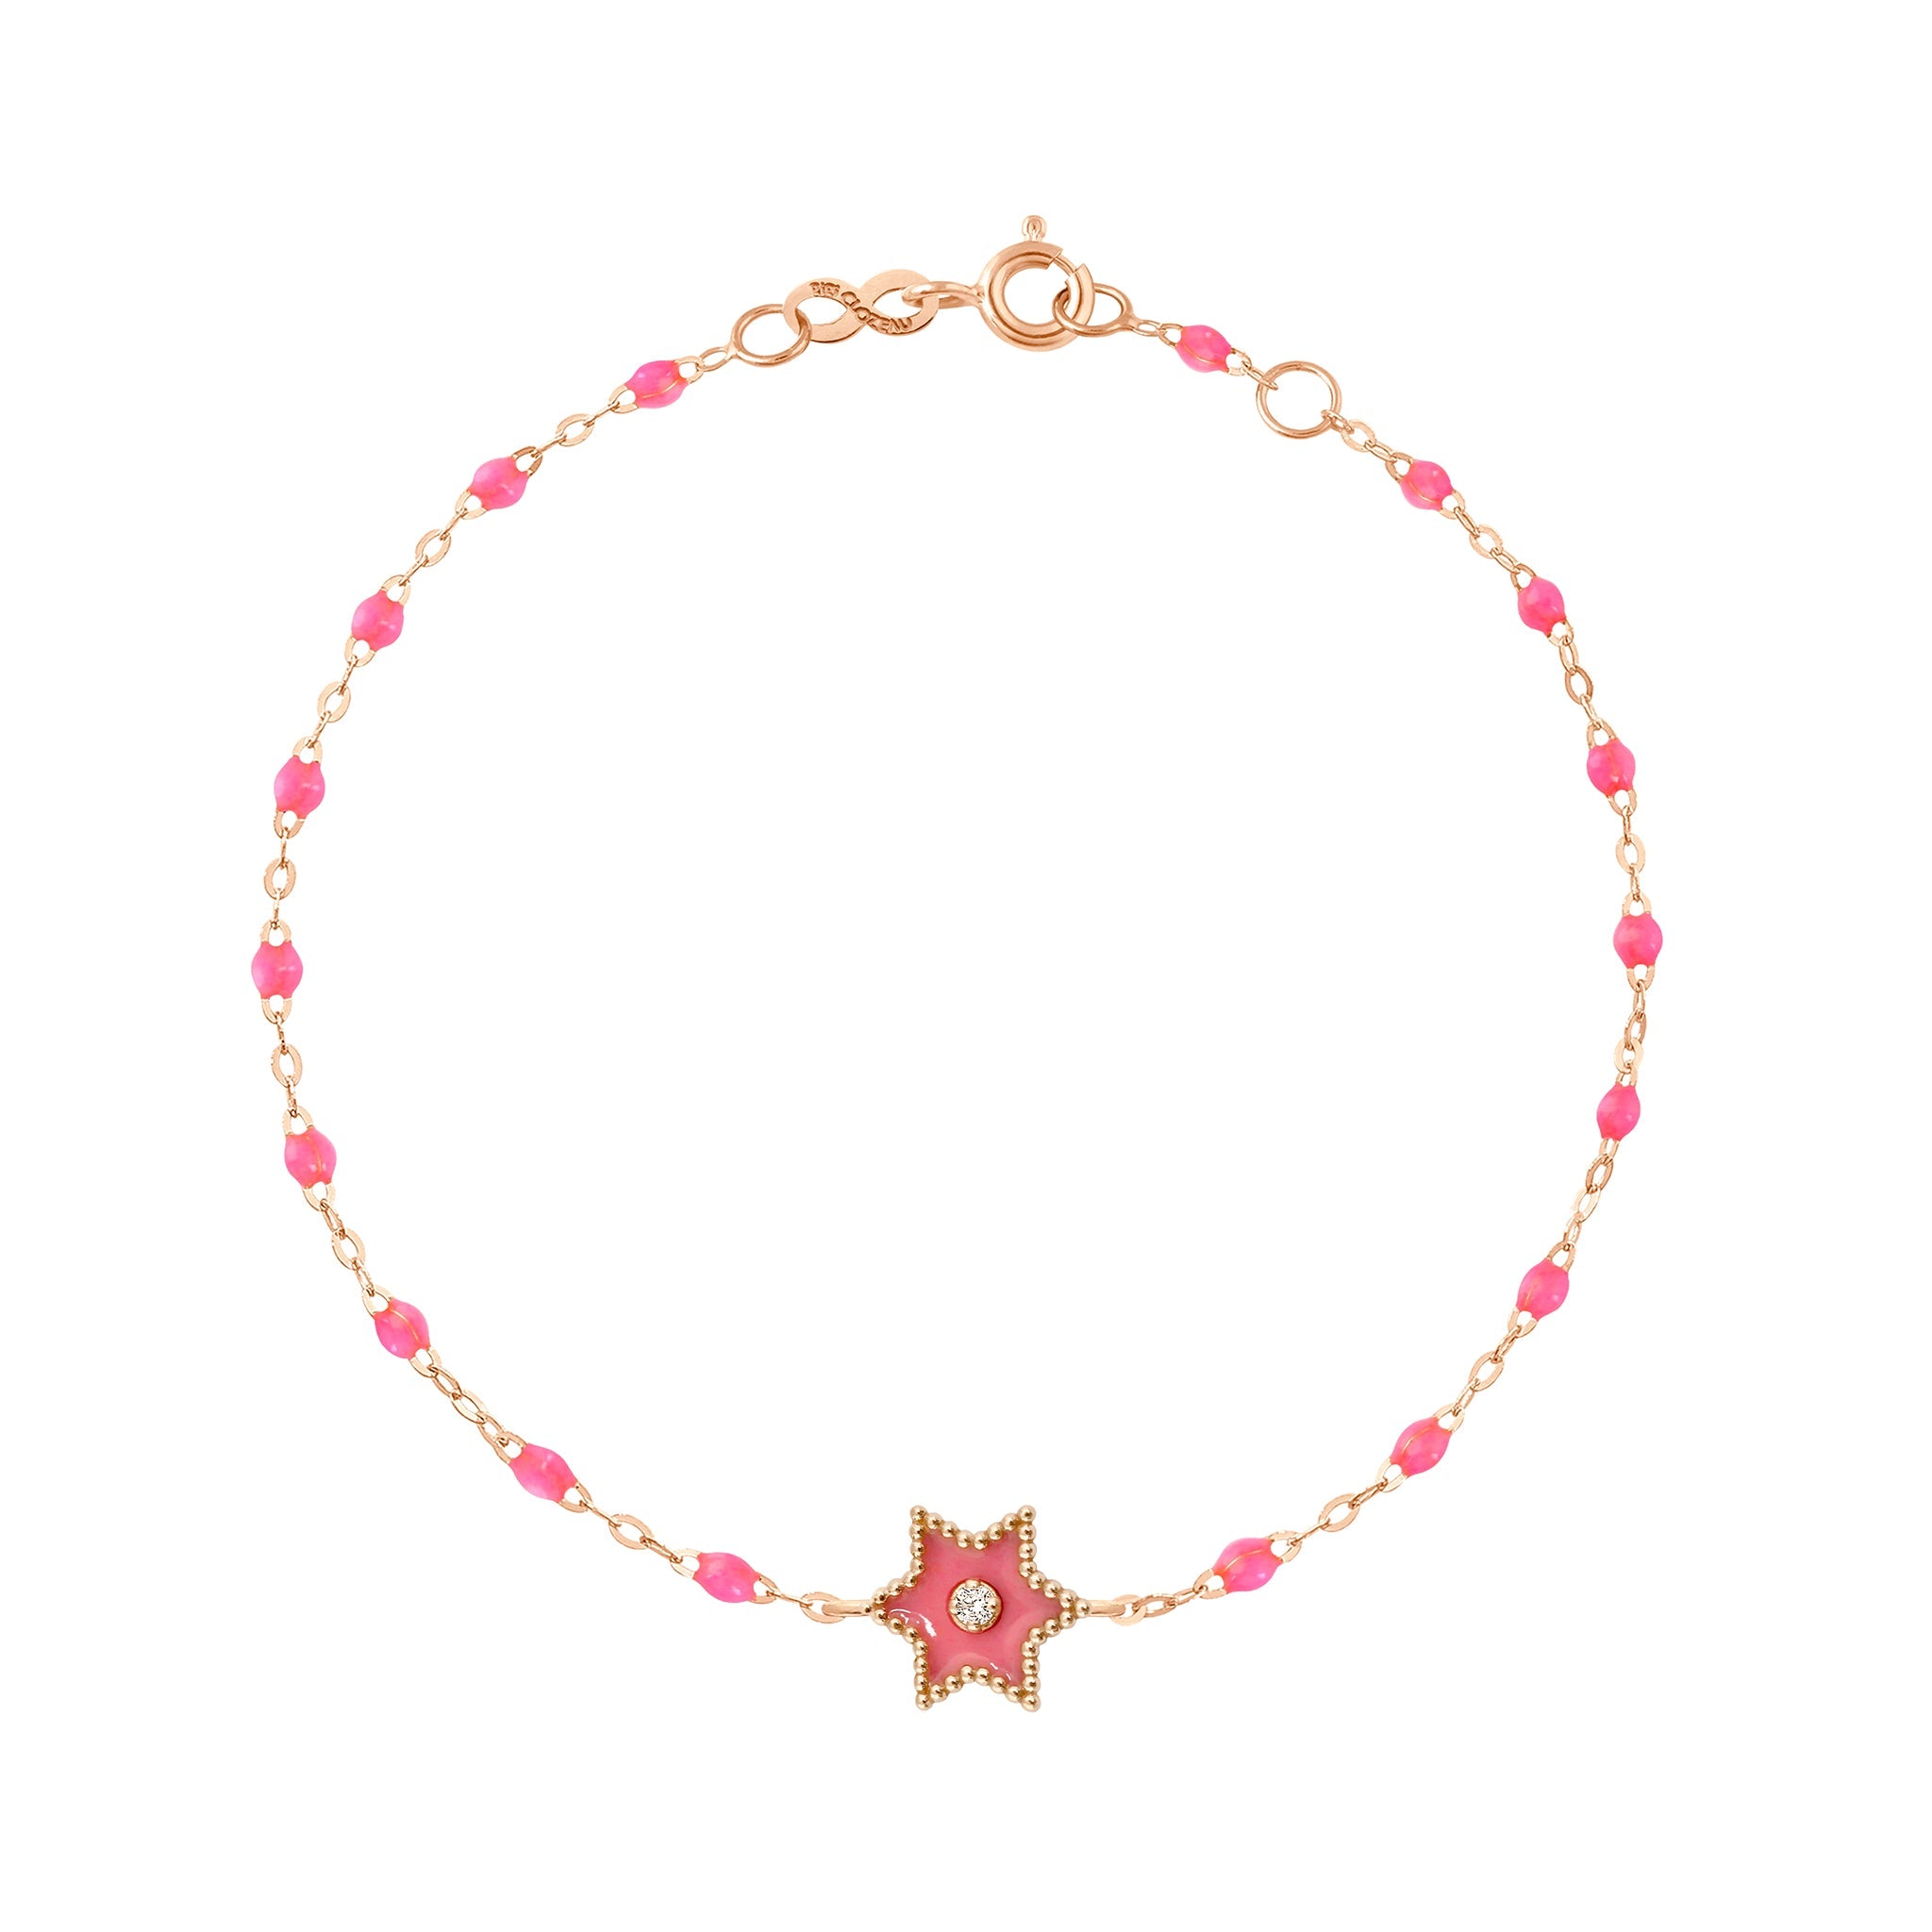 Bracelet Etoile Star résine rose fluo, diamant, or rose, 17 cm pirate Référence :  b3st001r2917di -1